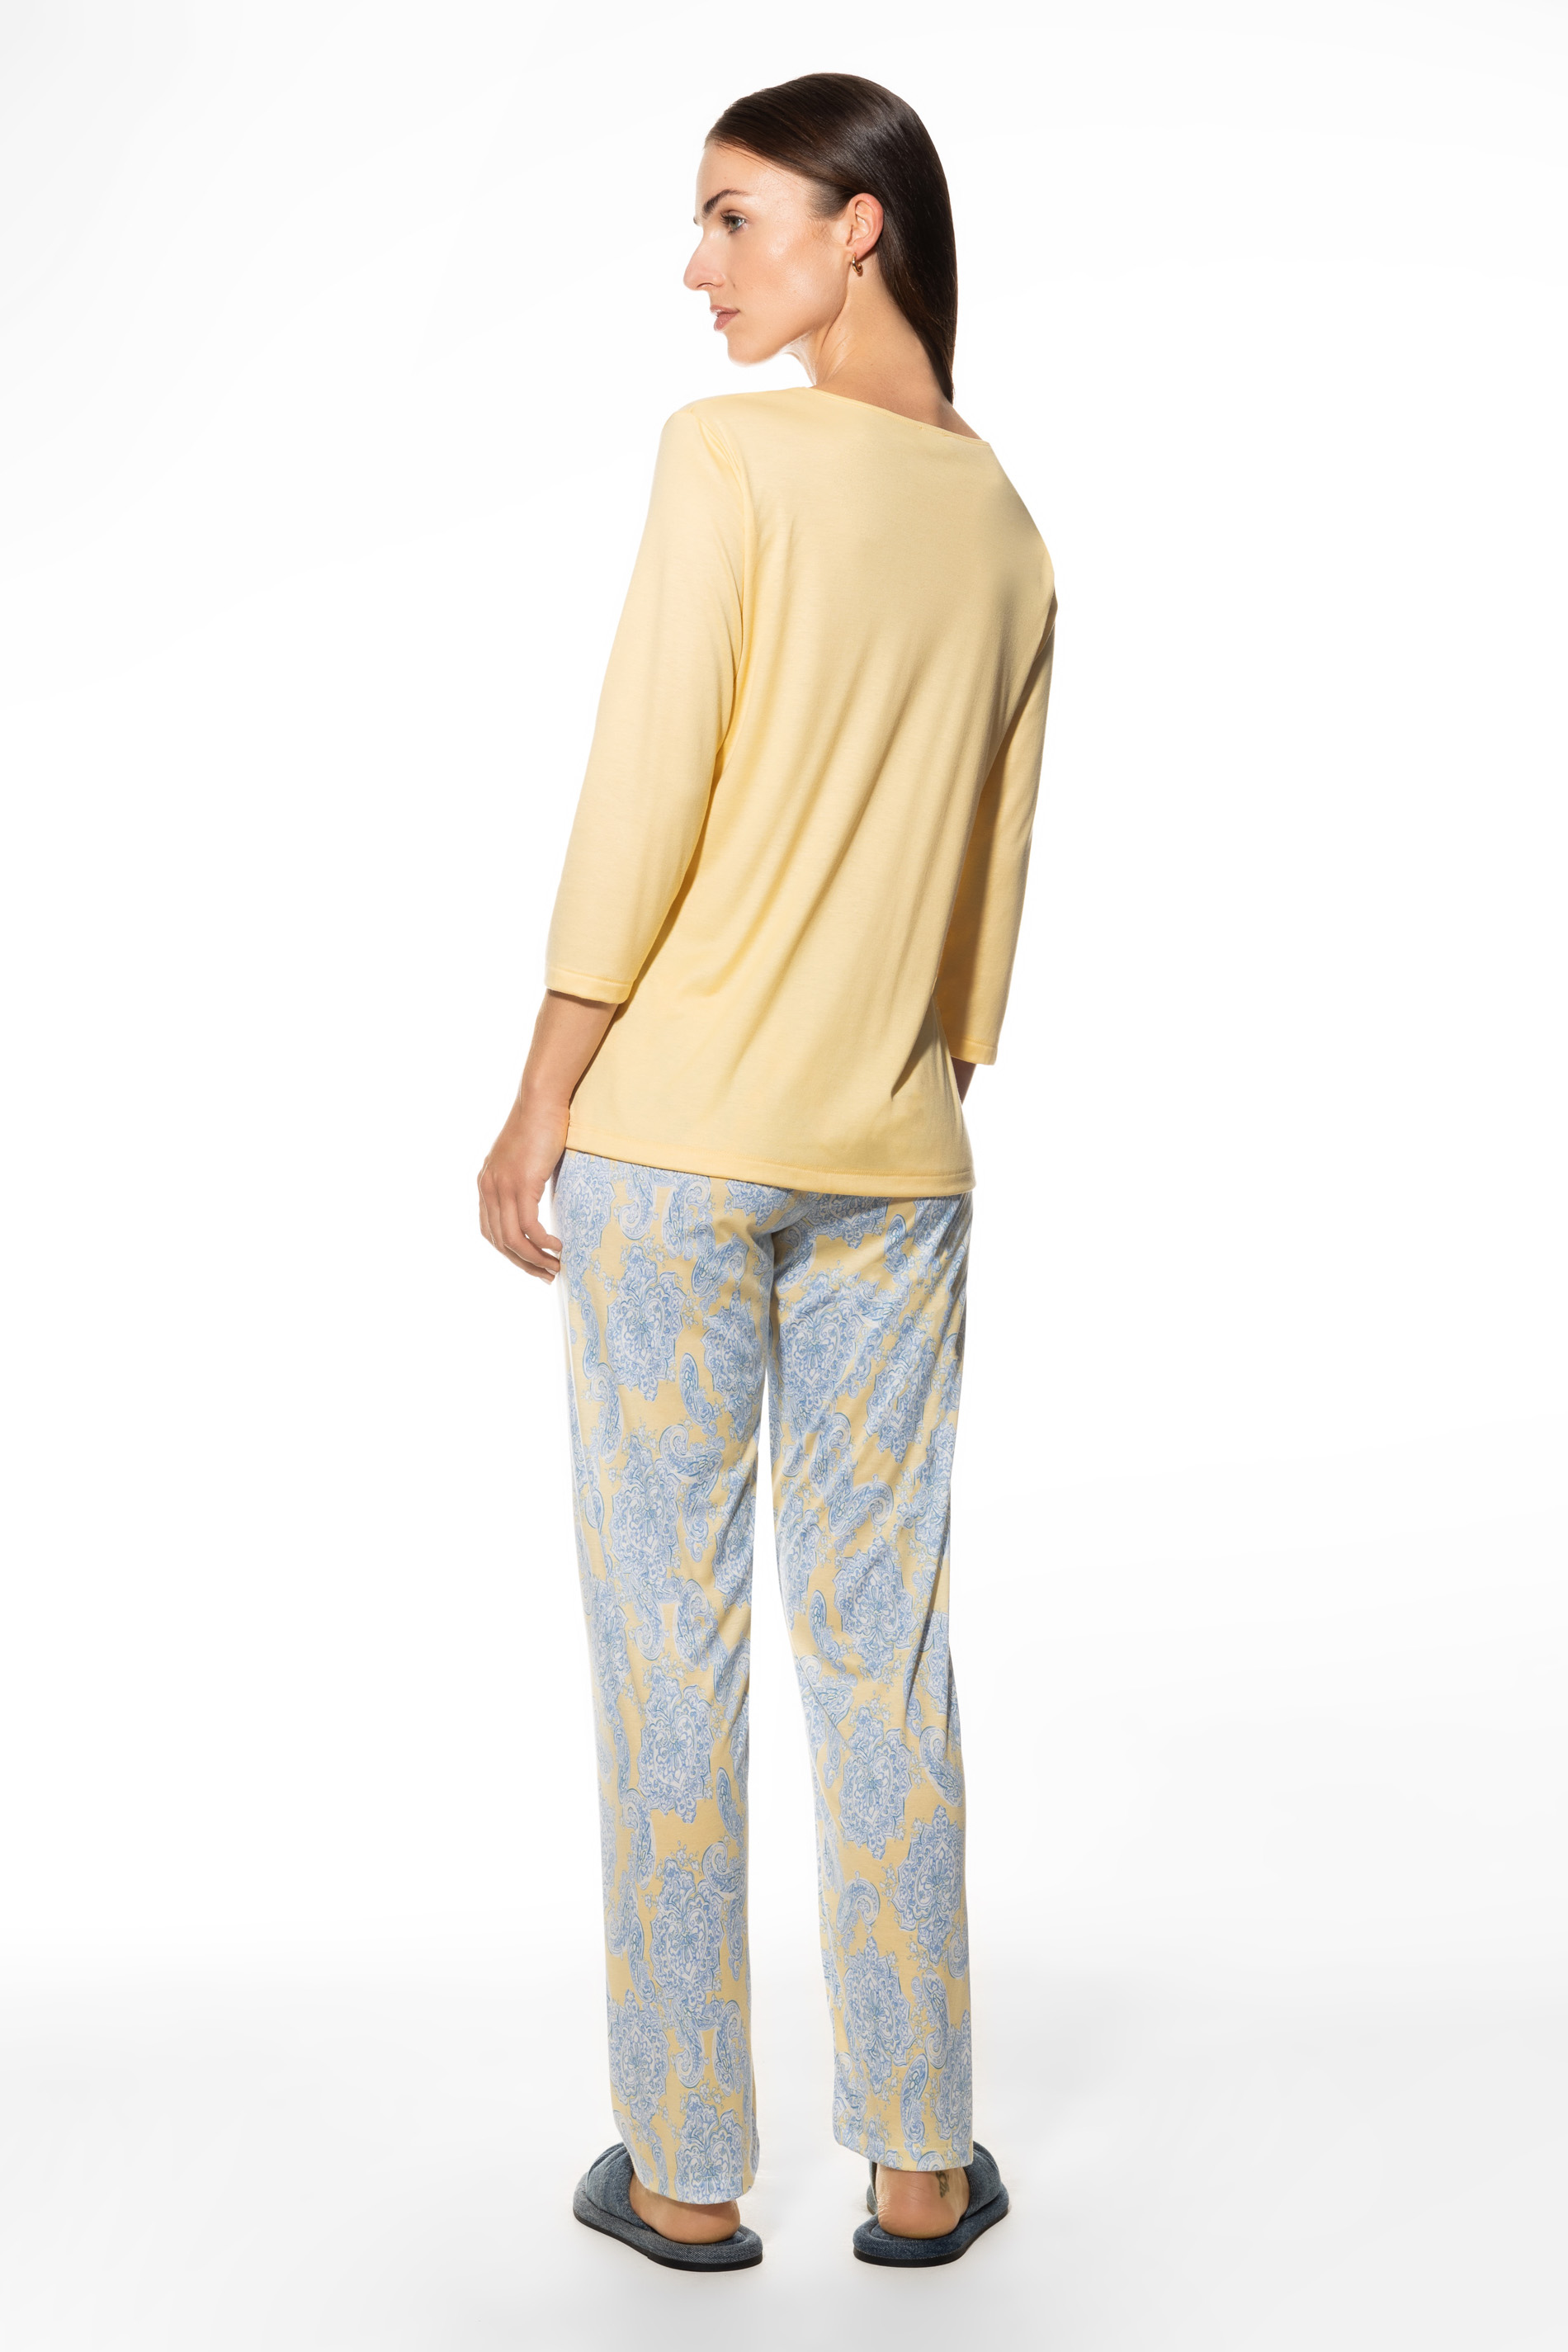 Pyjama Serie Tais Rear View | mey®